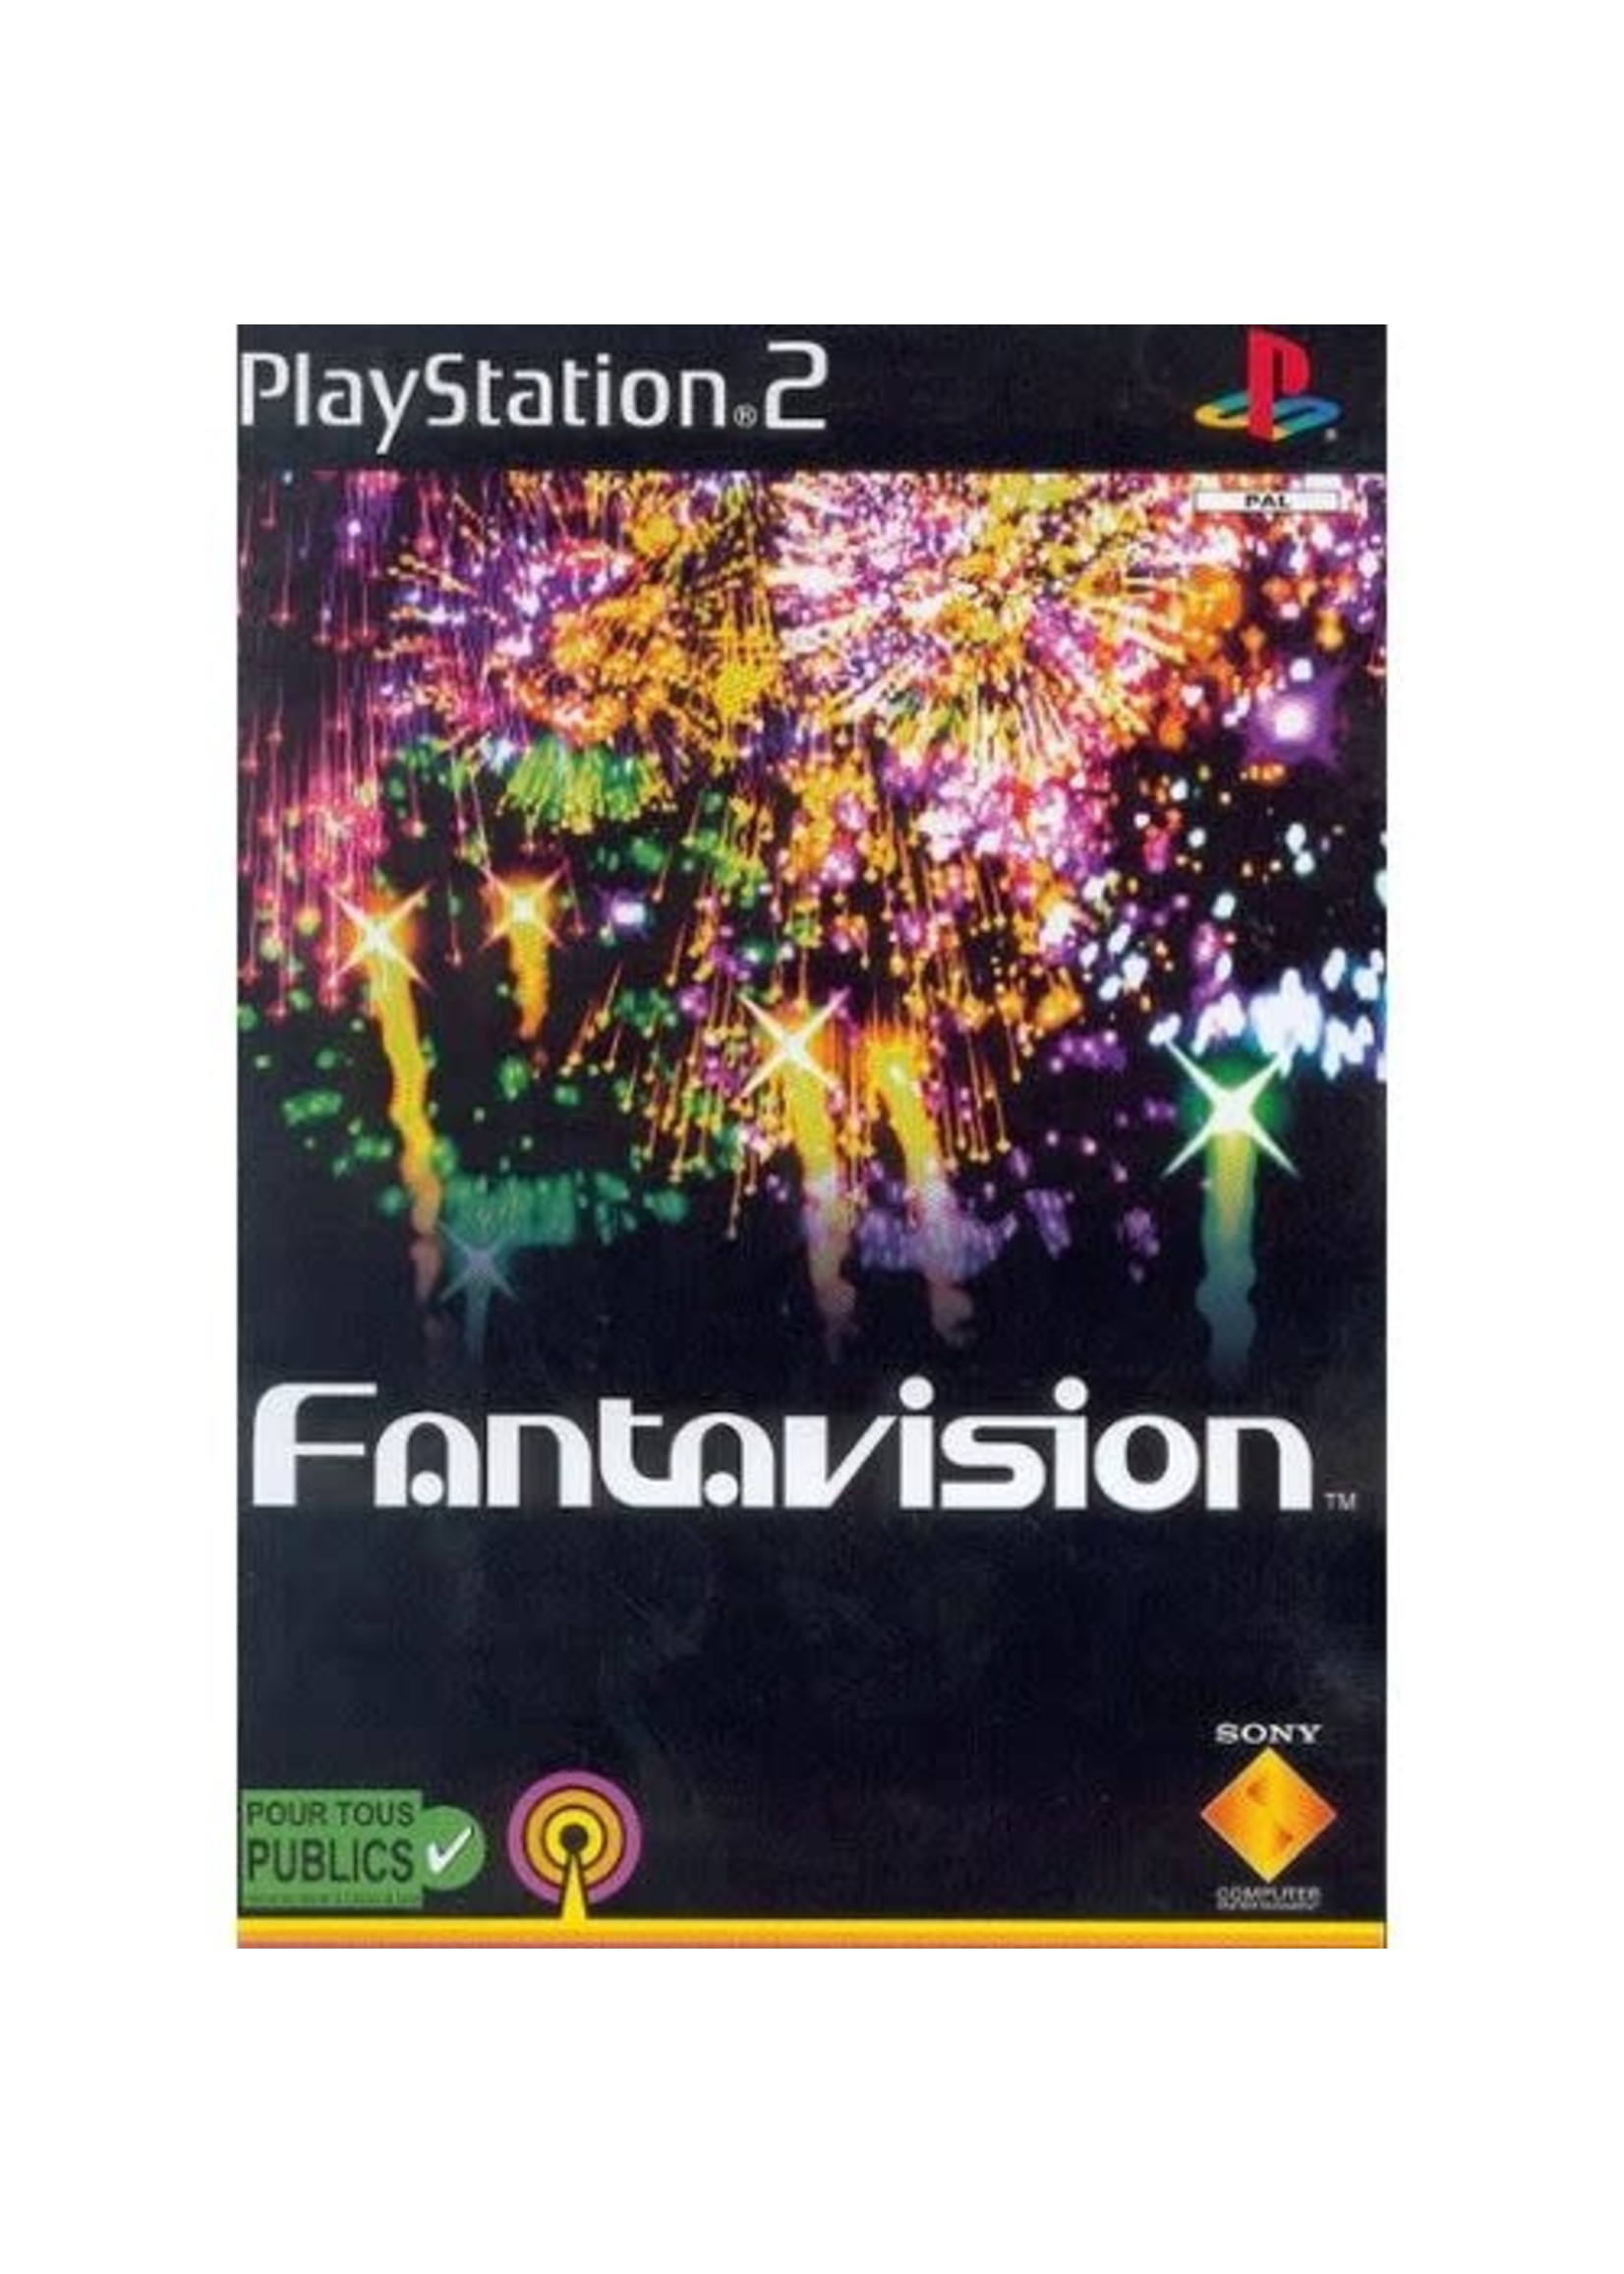 play fantavision online